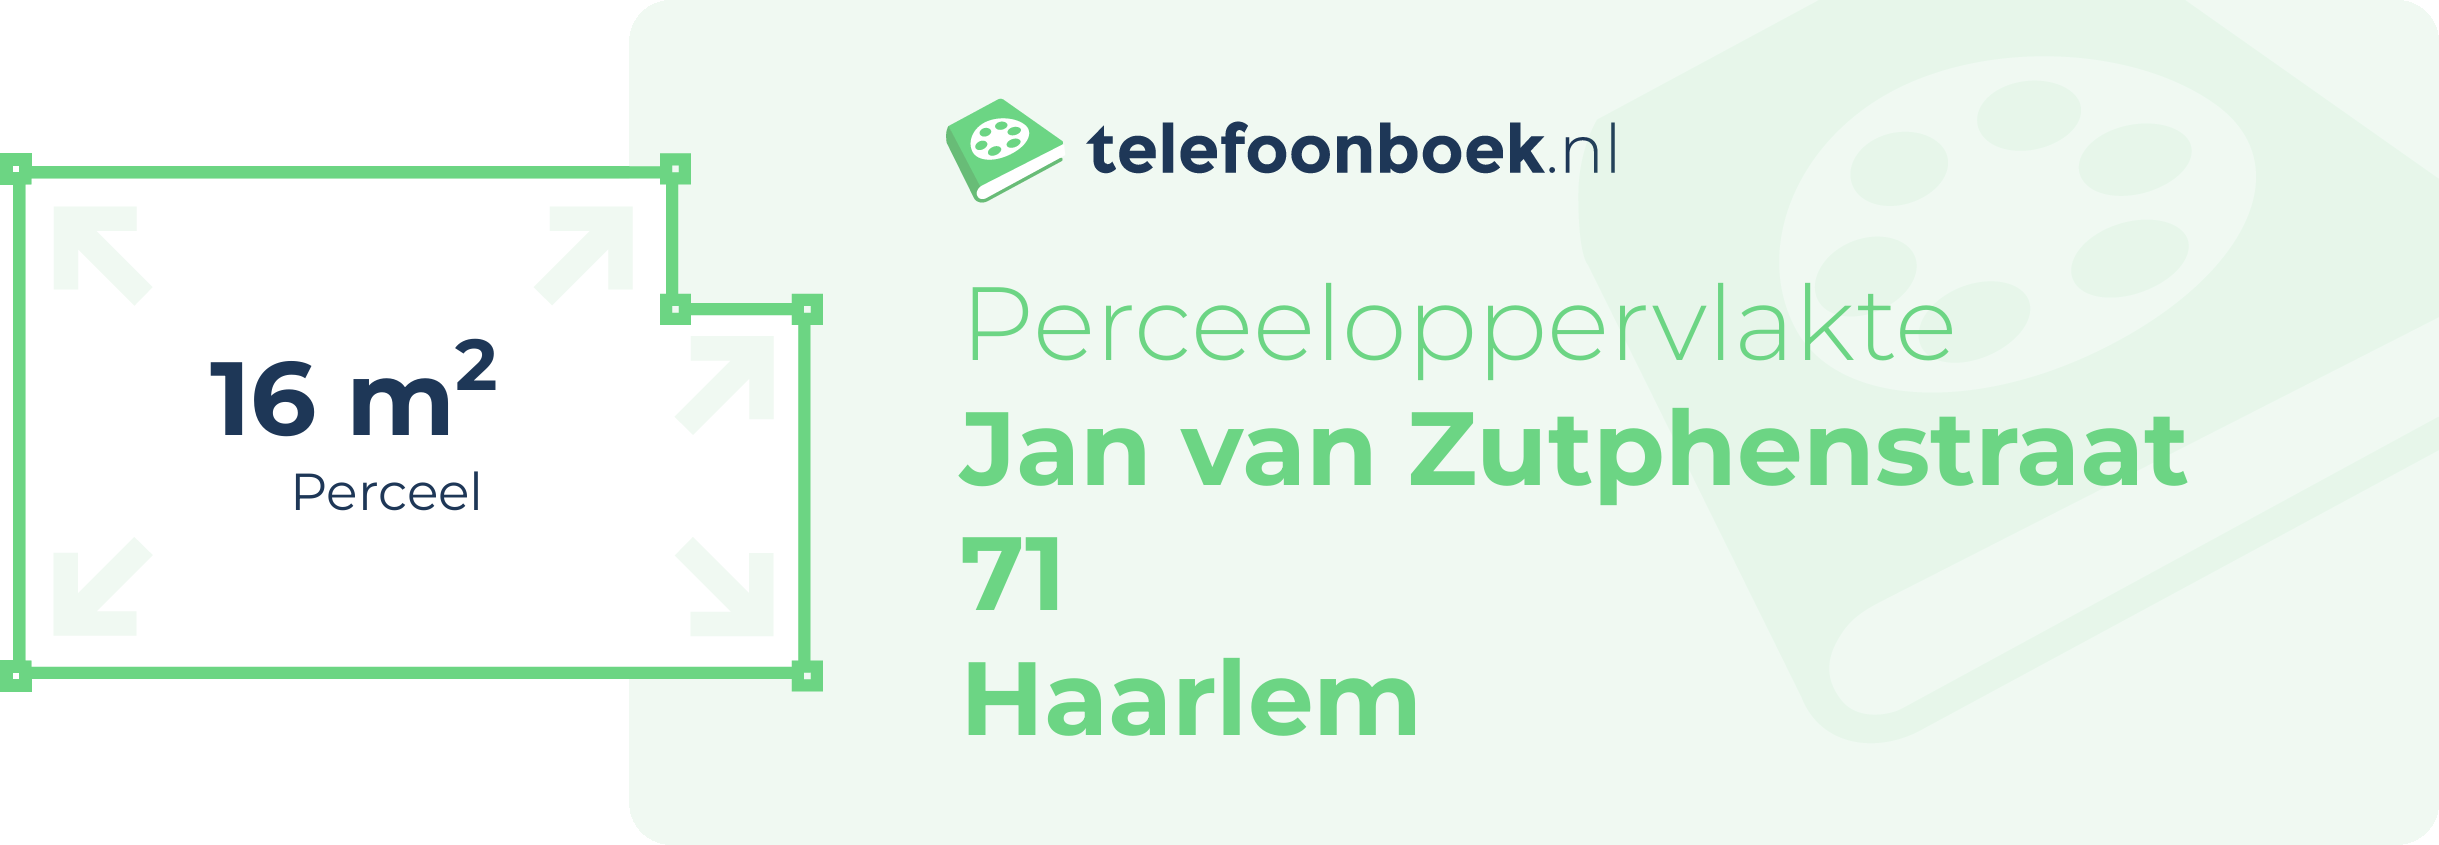 Perceeloppervlakte Jan Van Zutphenstraat 71 Haarlem